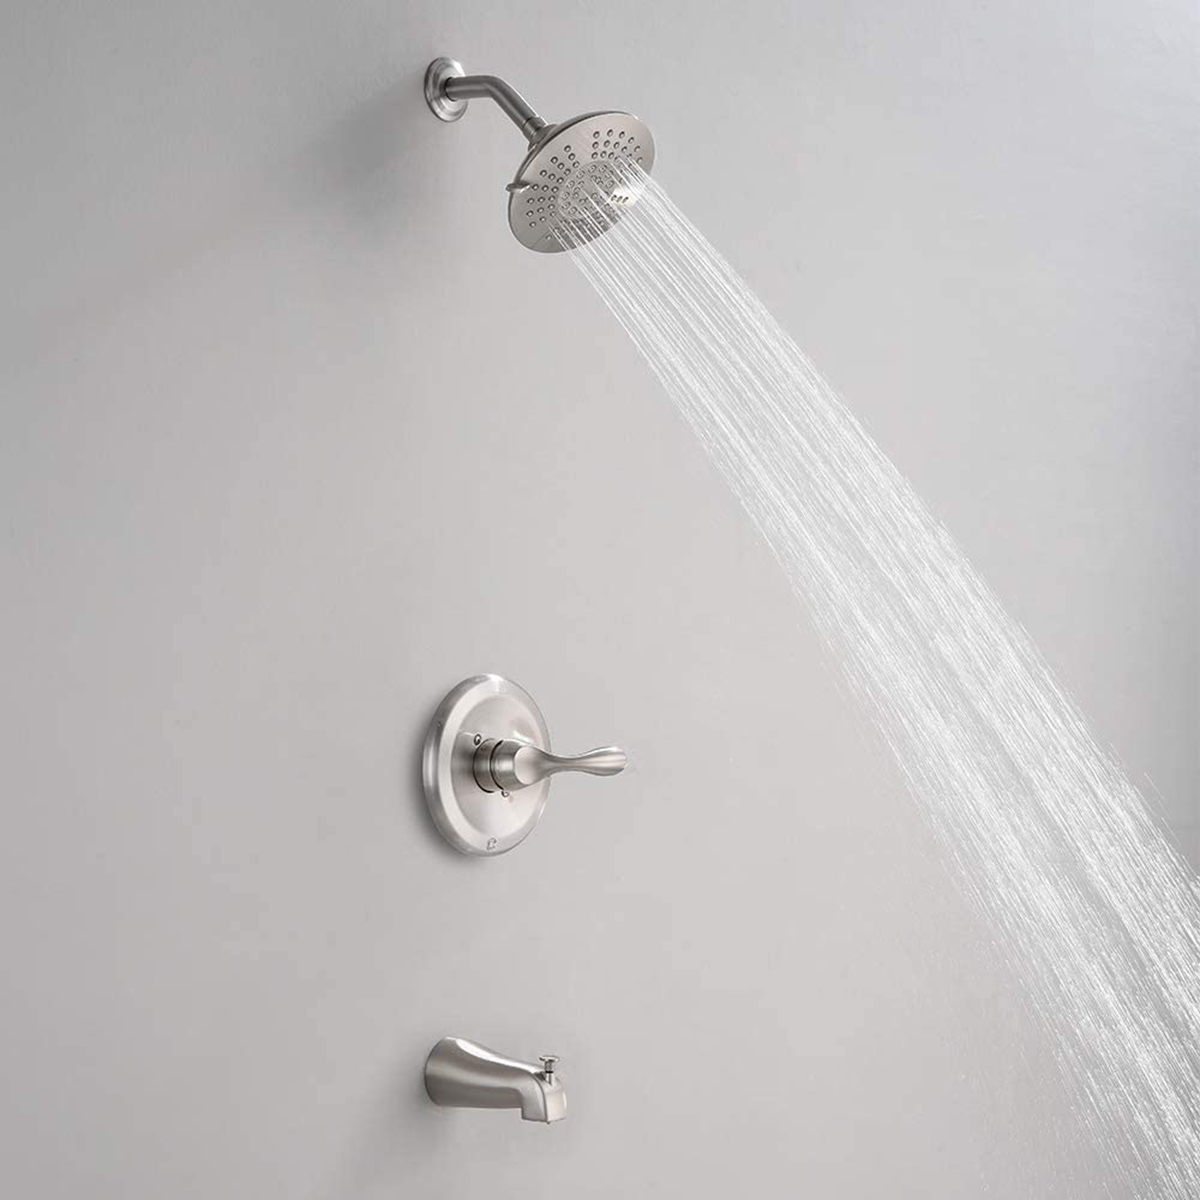 Sistema doccia Aquacubic con montaggio a parete, vasca da bagno e set di rubinetti per doccia con deviatore a pulsante